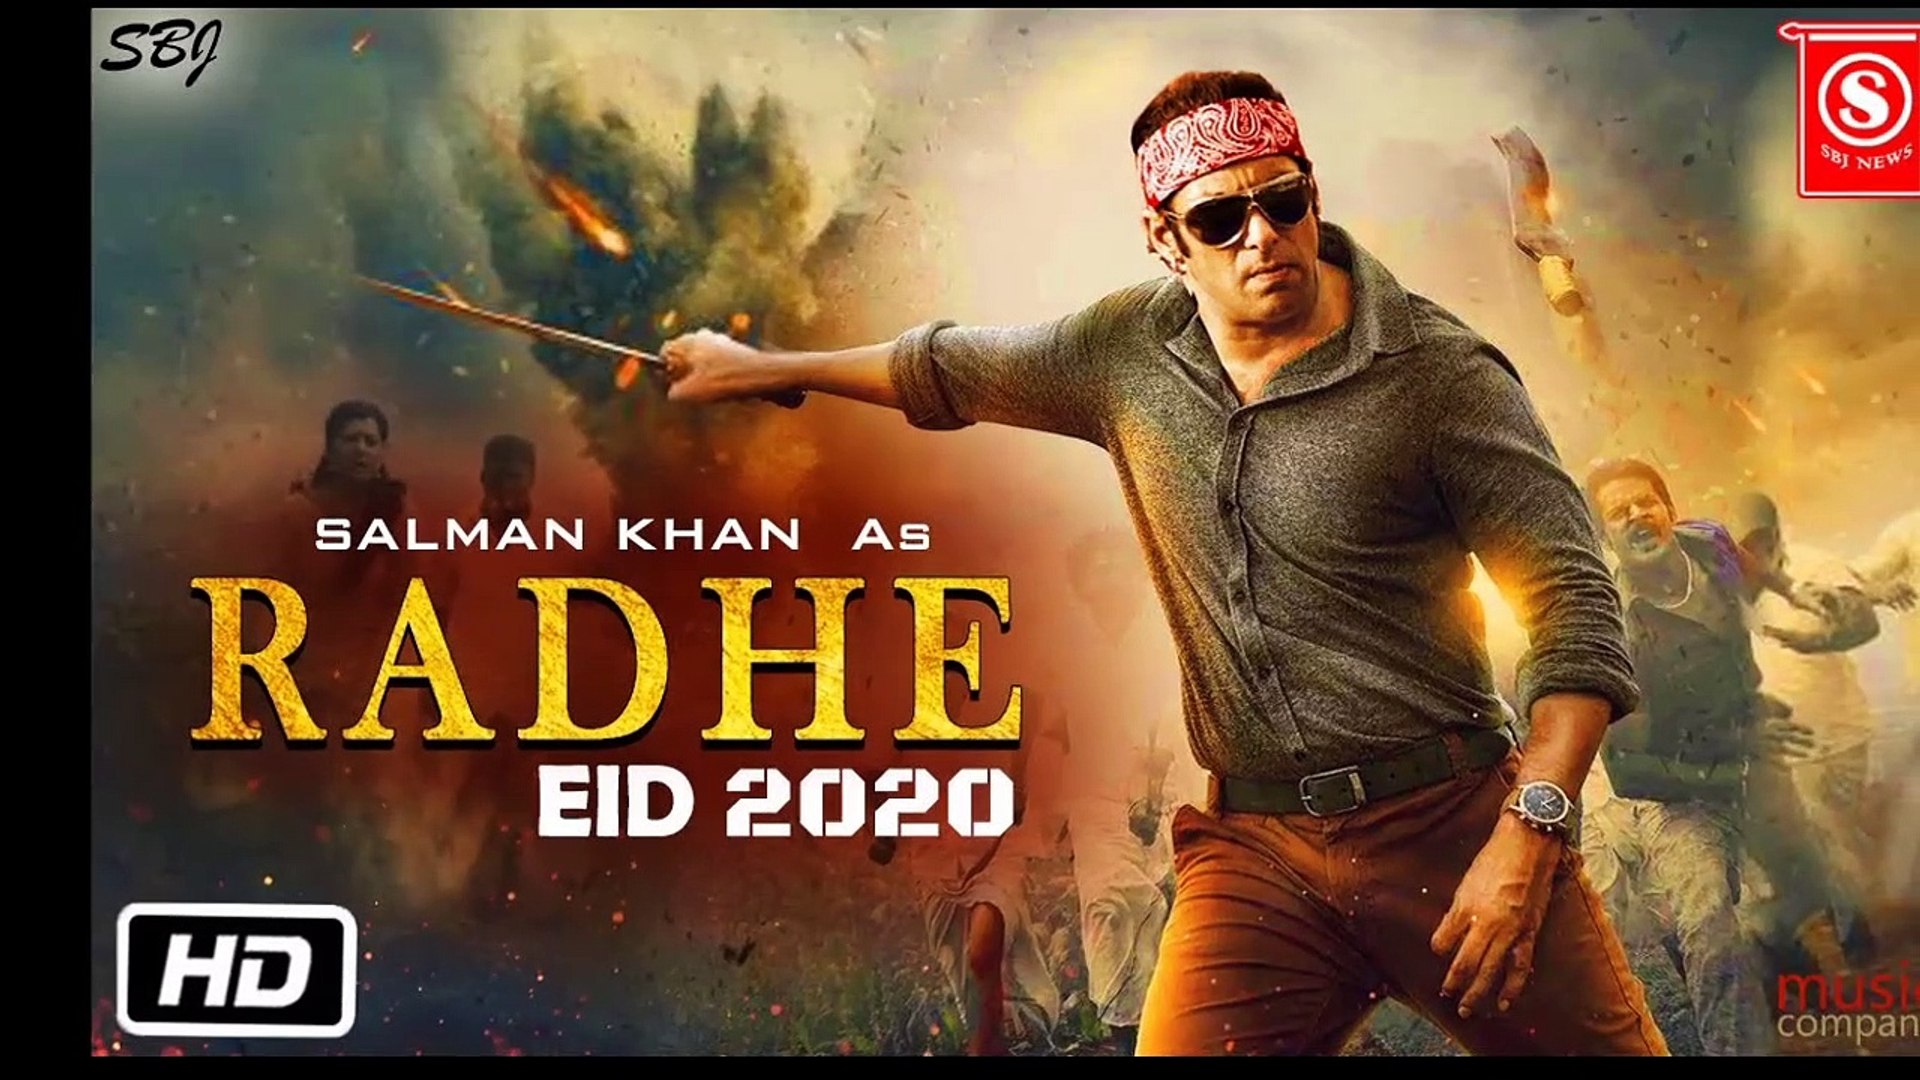 Radhe Movie First Look | Radhe Trailer | Salman khan workout For Radhe | Prabhu deva, Sohail Khan, Radhe Movie EID 2020 - video Dailymotion